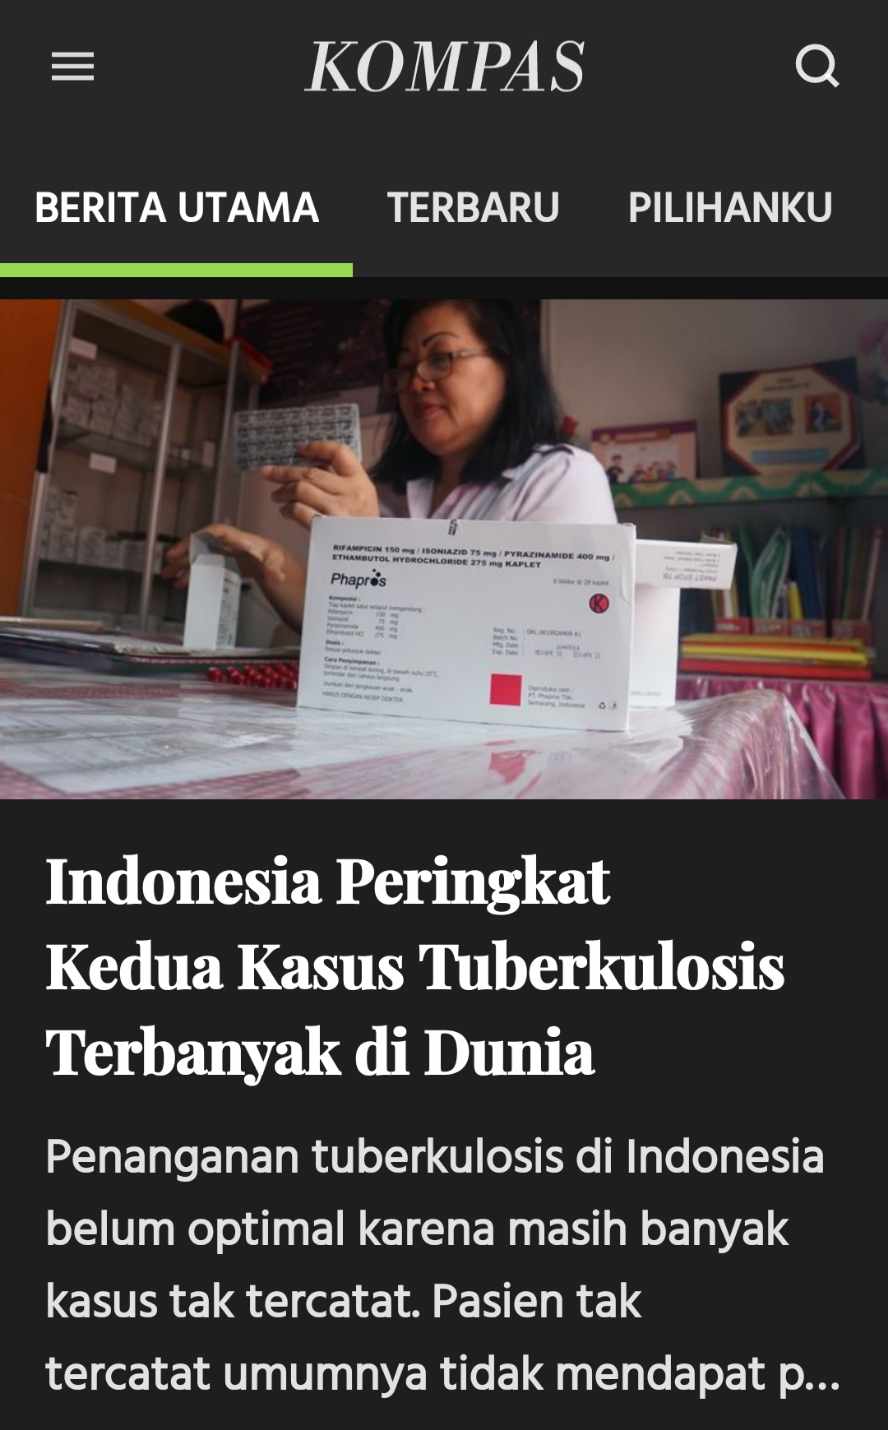 TBC Indonesia nomor 2 di dunia, 16 orang mati per jam